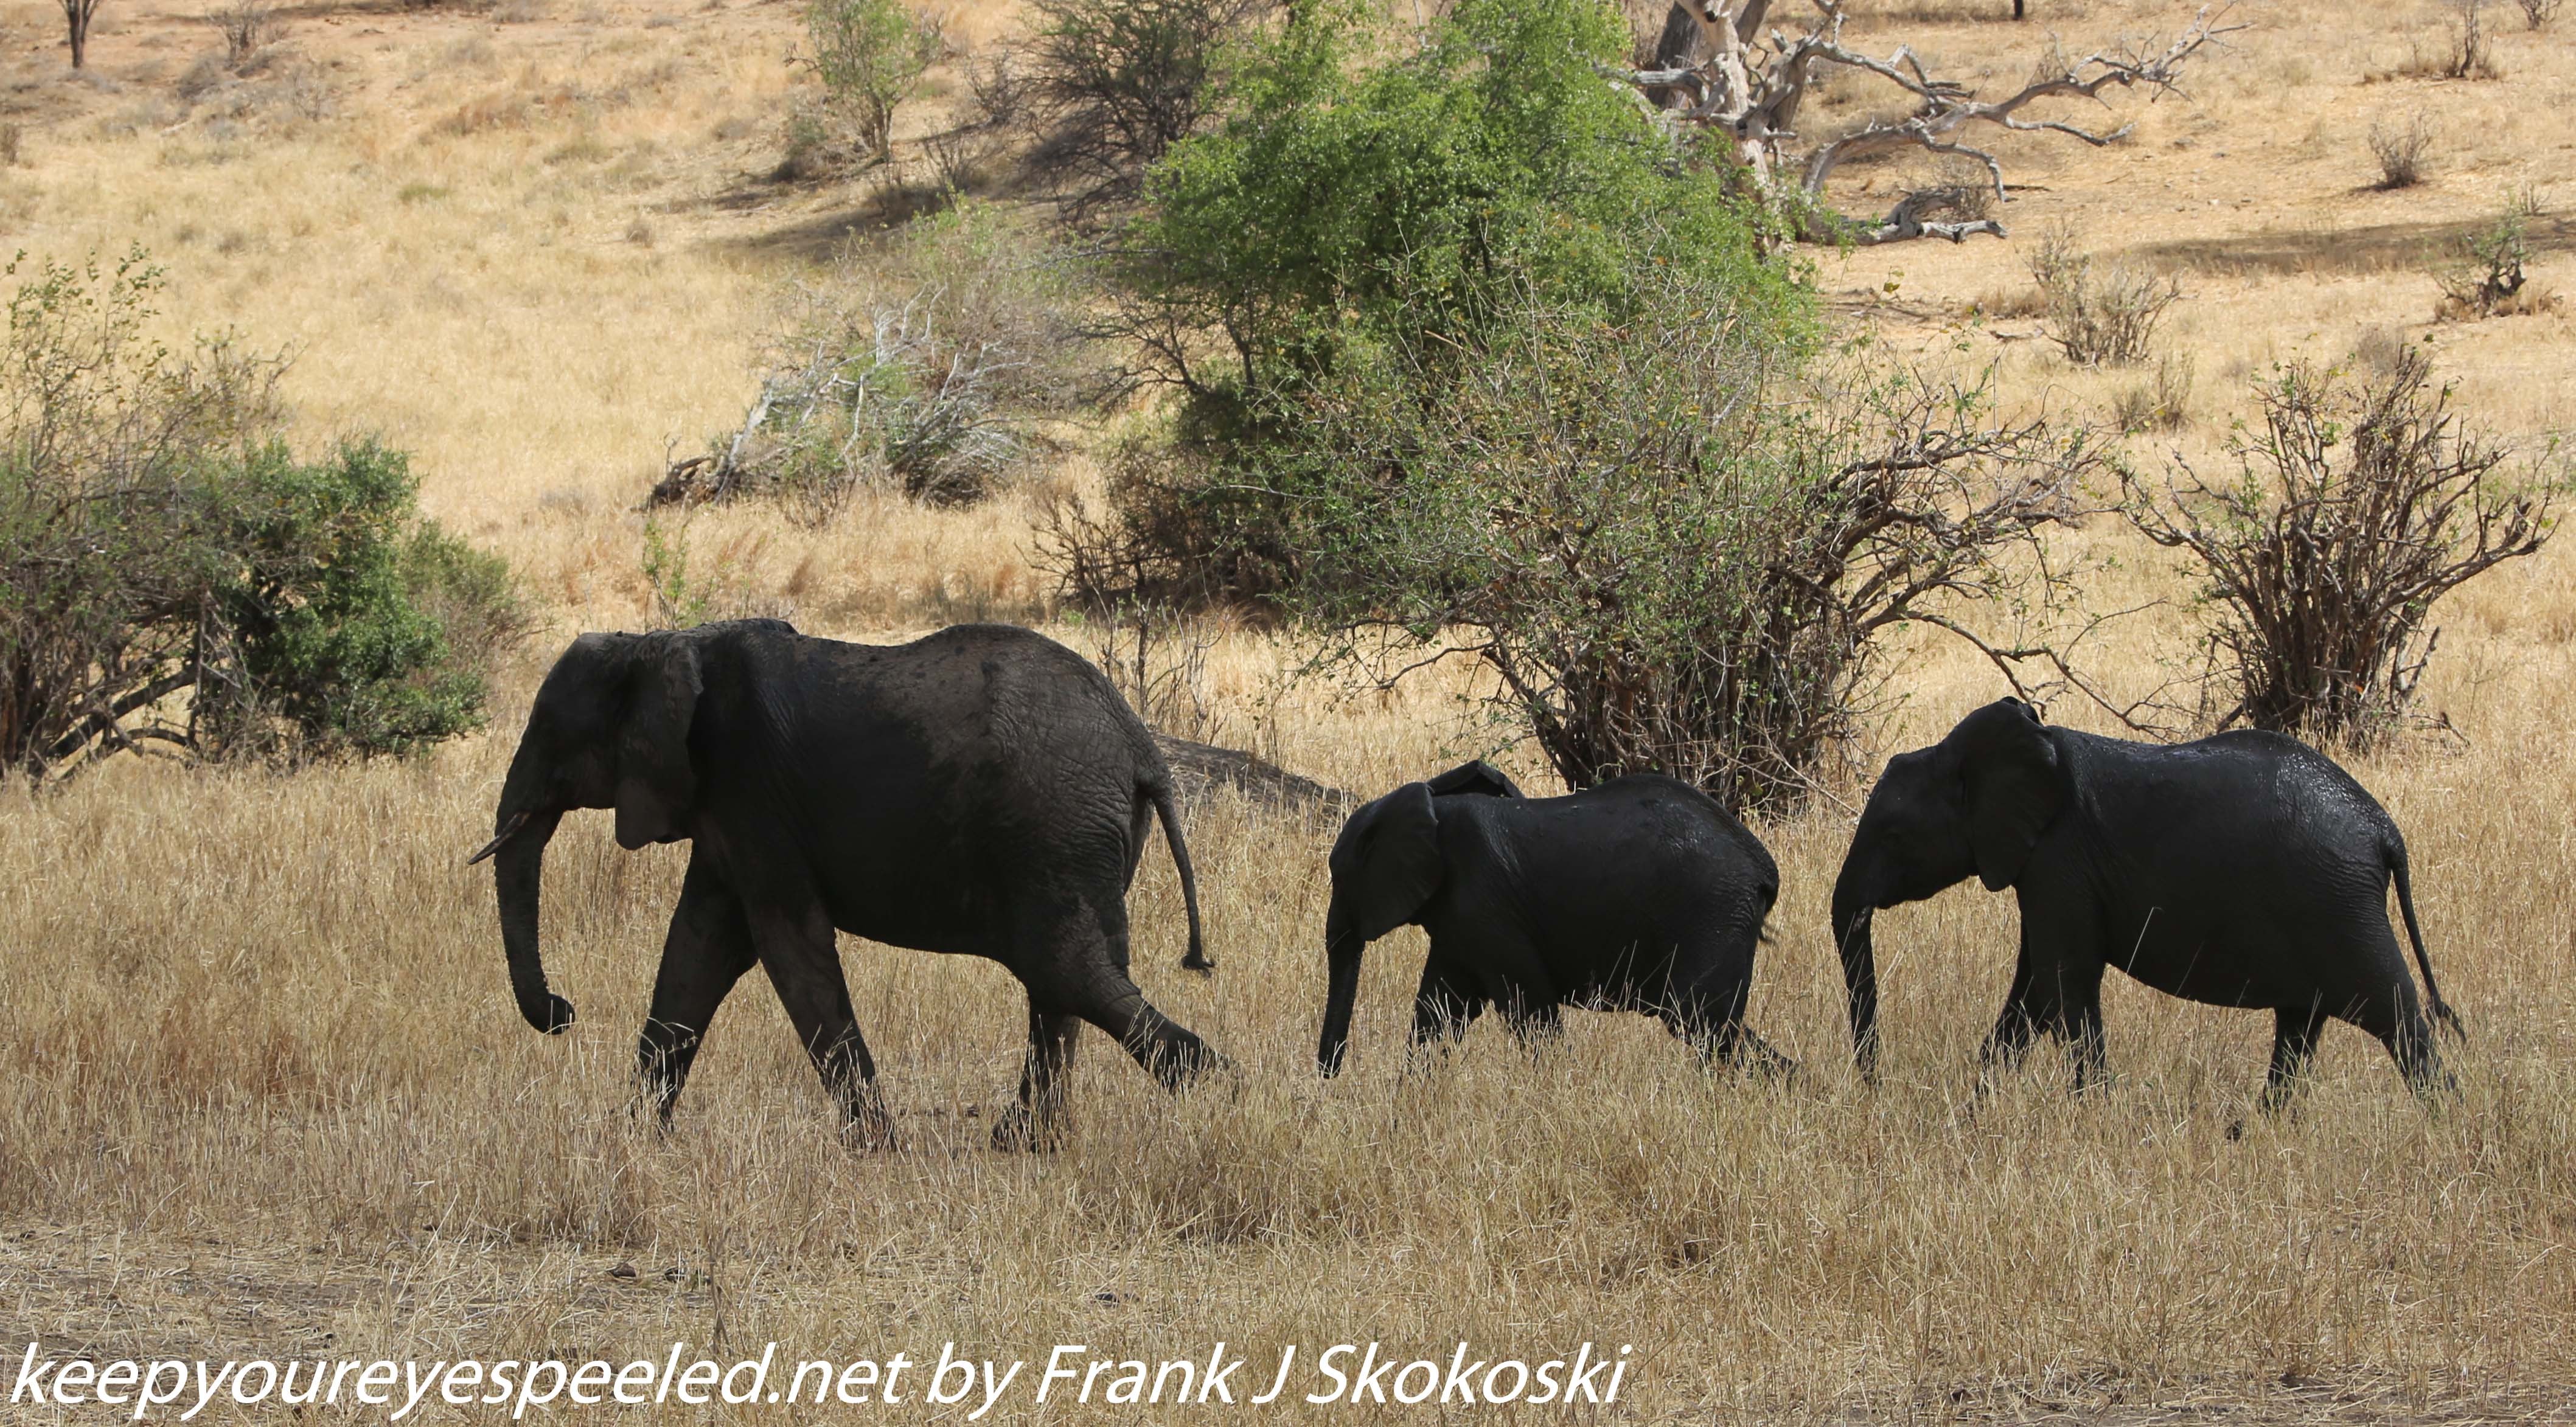 Tanzania-Day-Seven-Tarangire-elephants-30-of-31